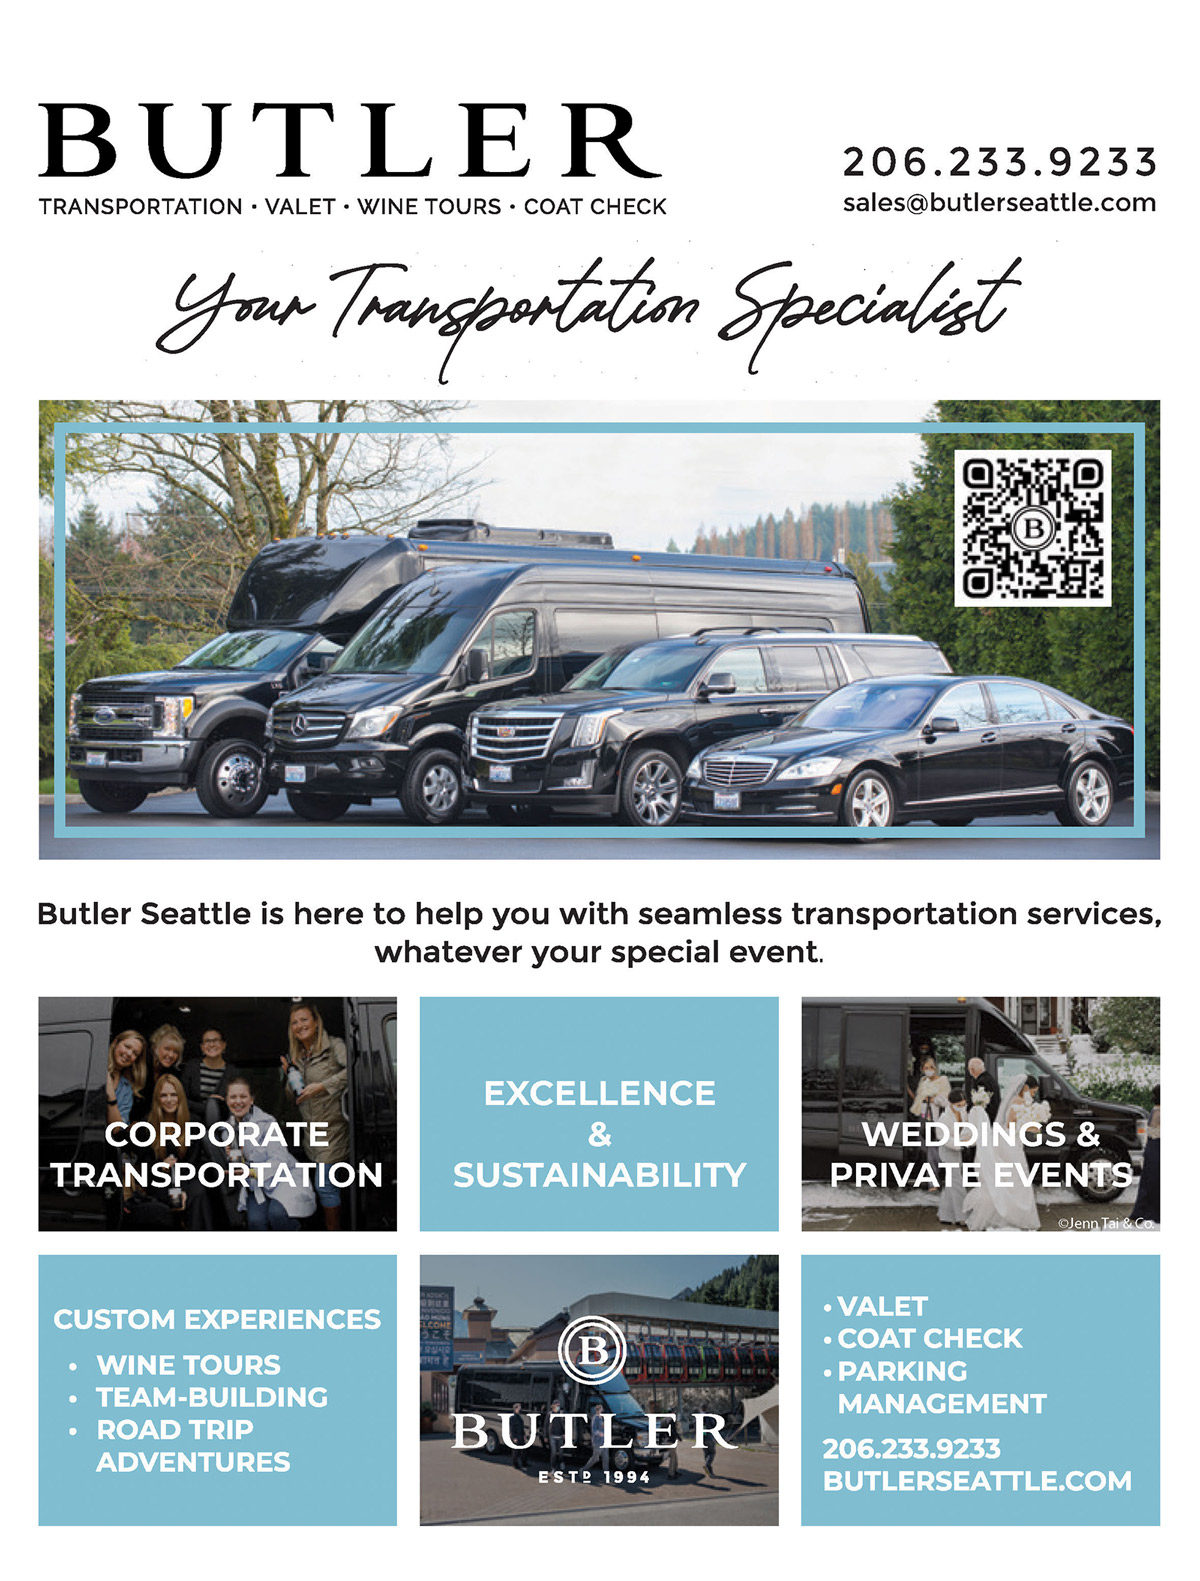 Butler Transportation Services